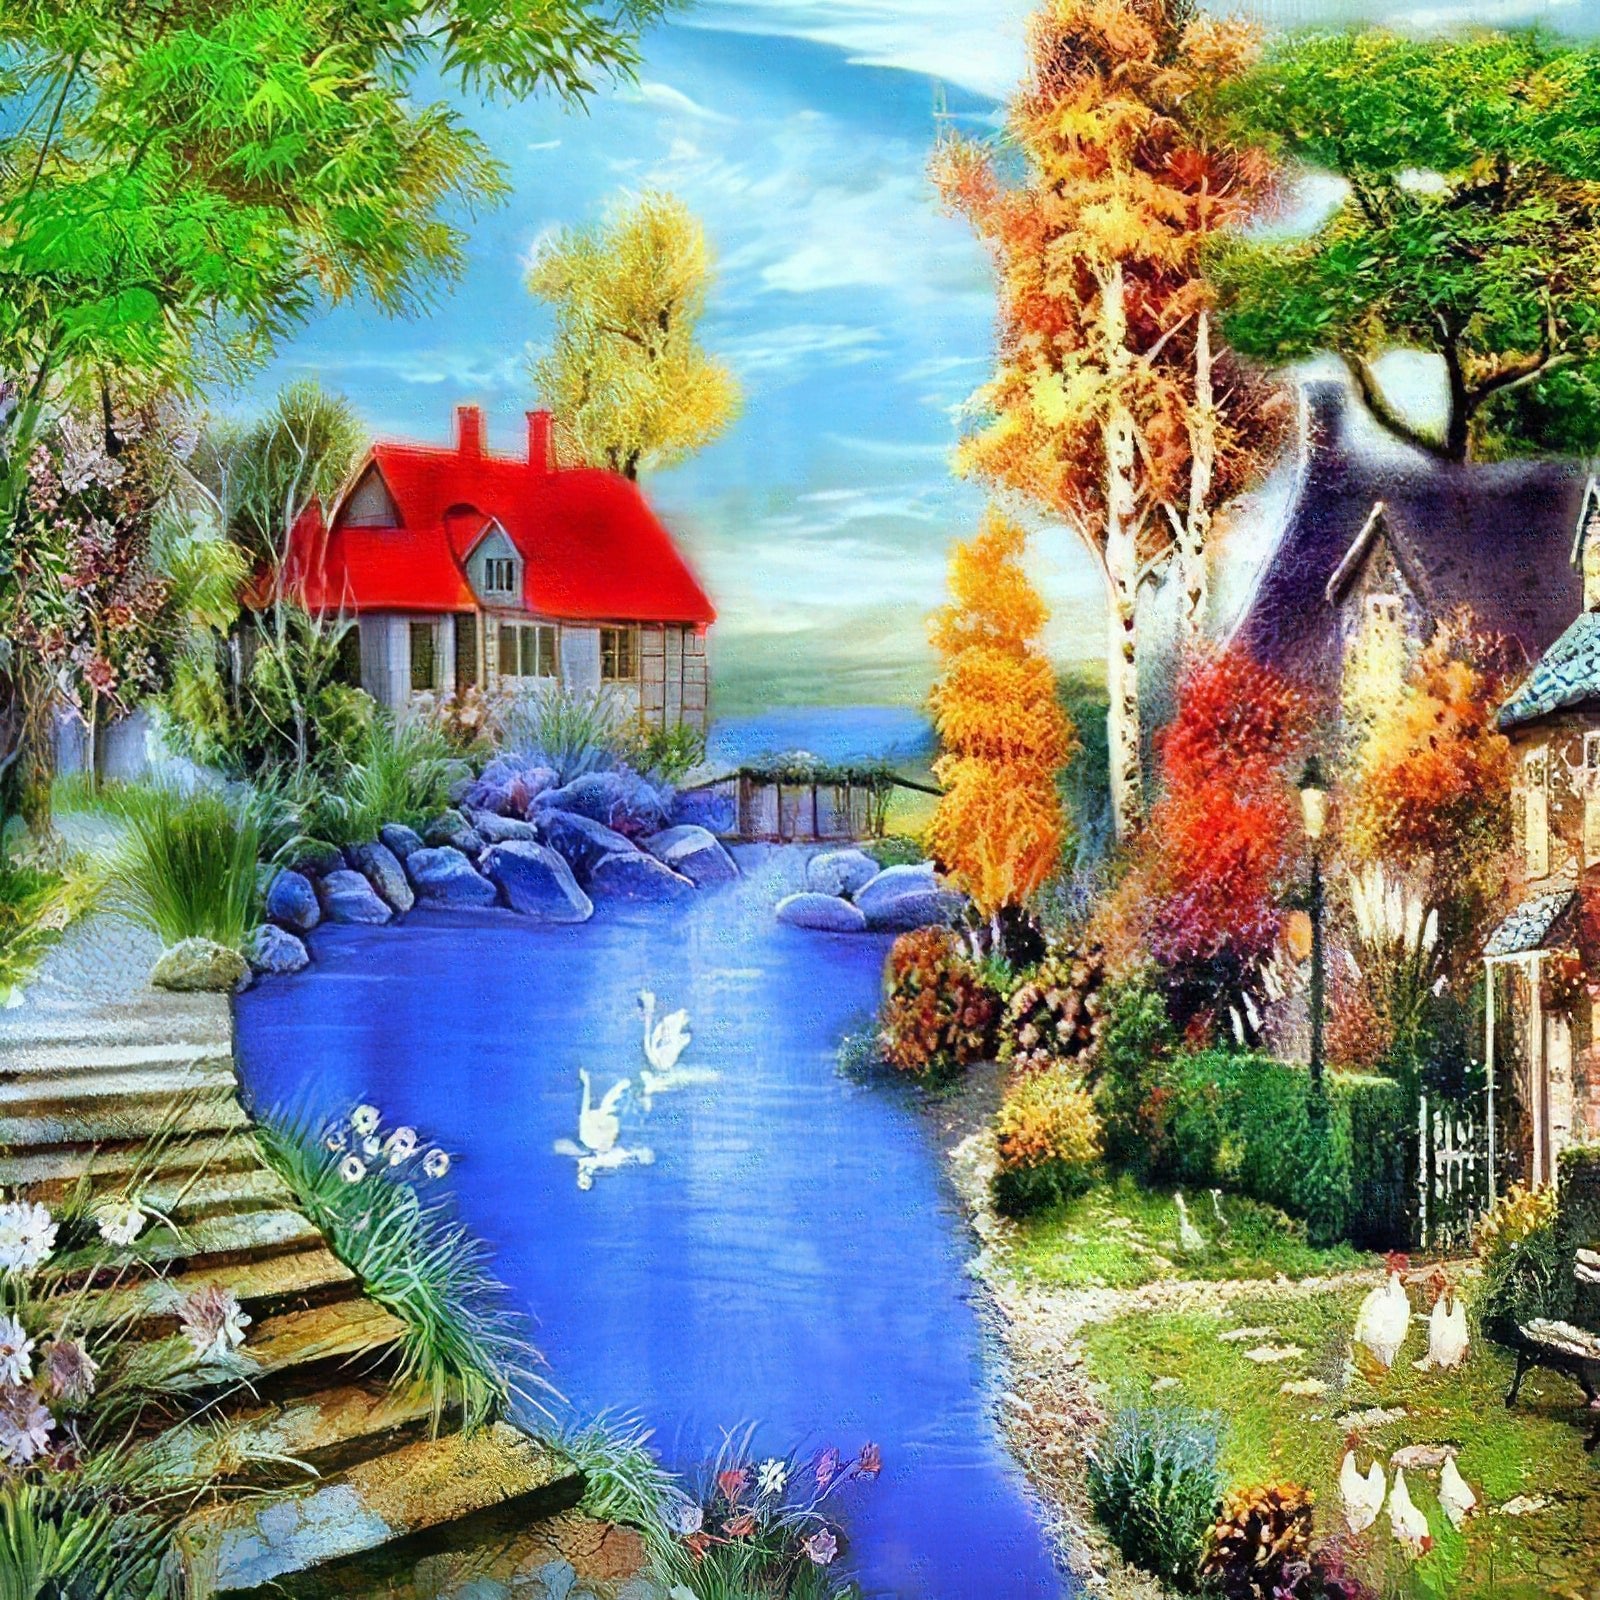 Una pintura de diamantes llamado 'Una casa roja y un pequeño estanque' - Meencantalapinturadediamantes